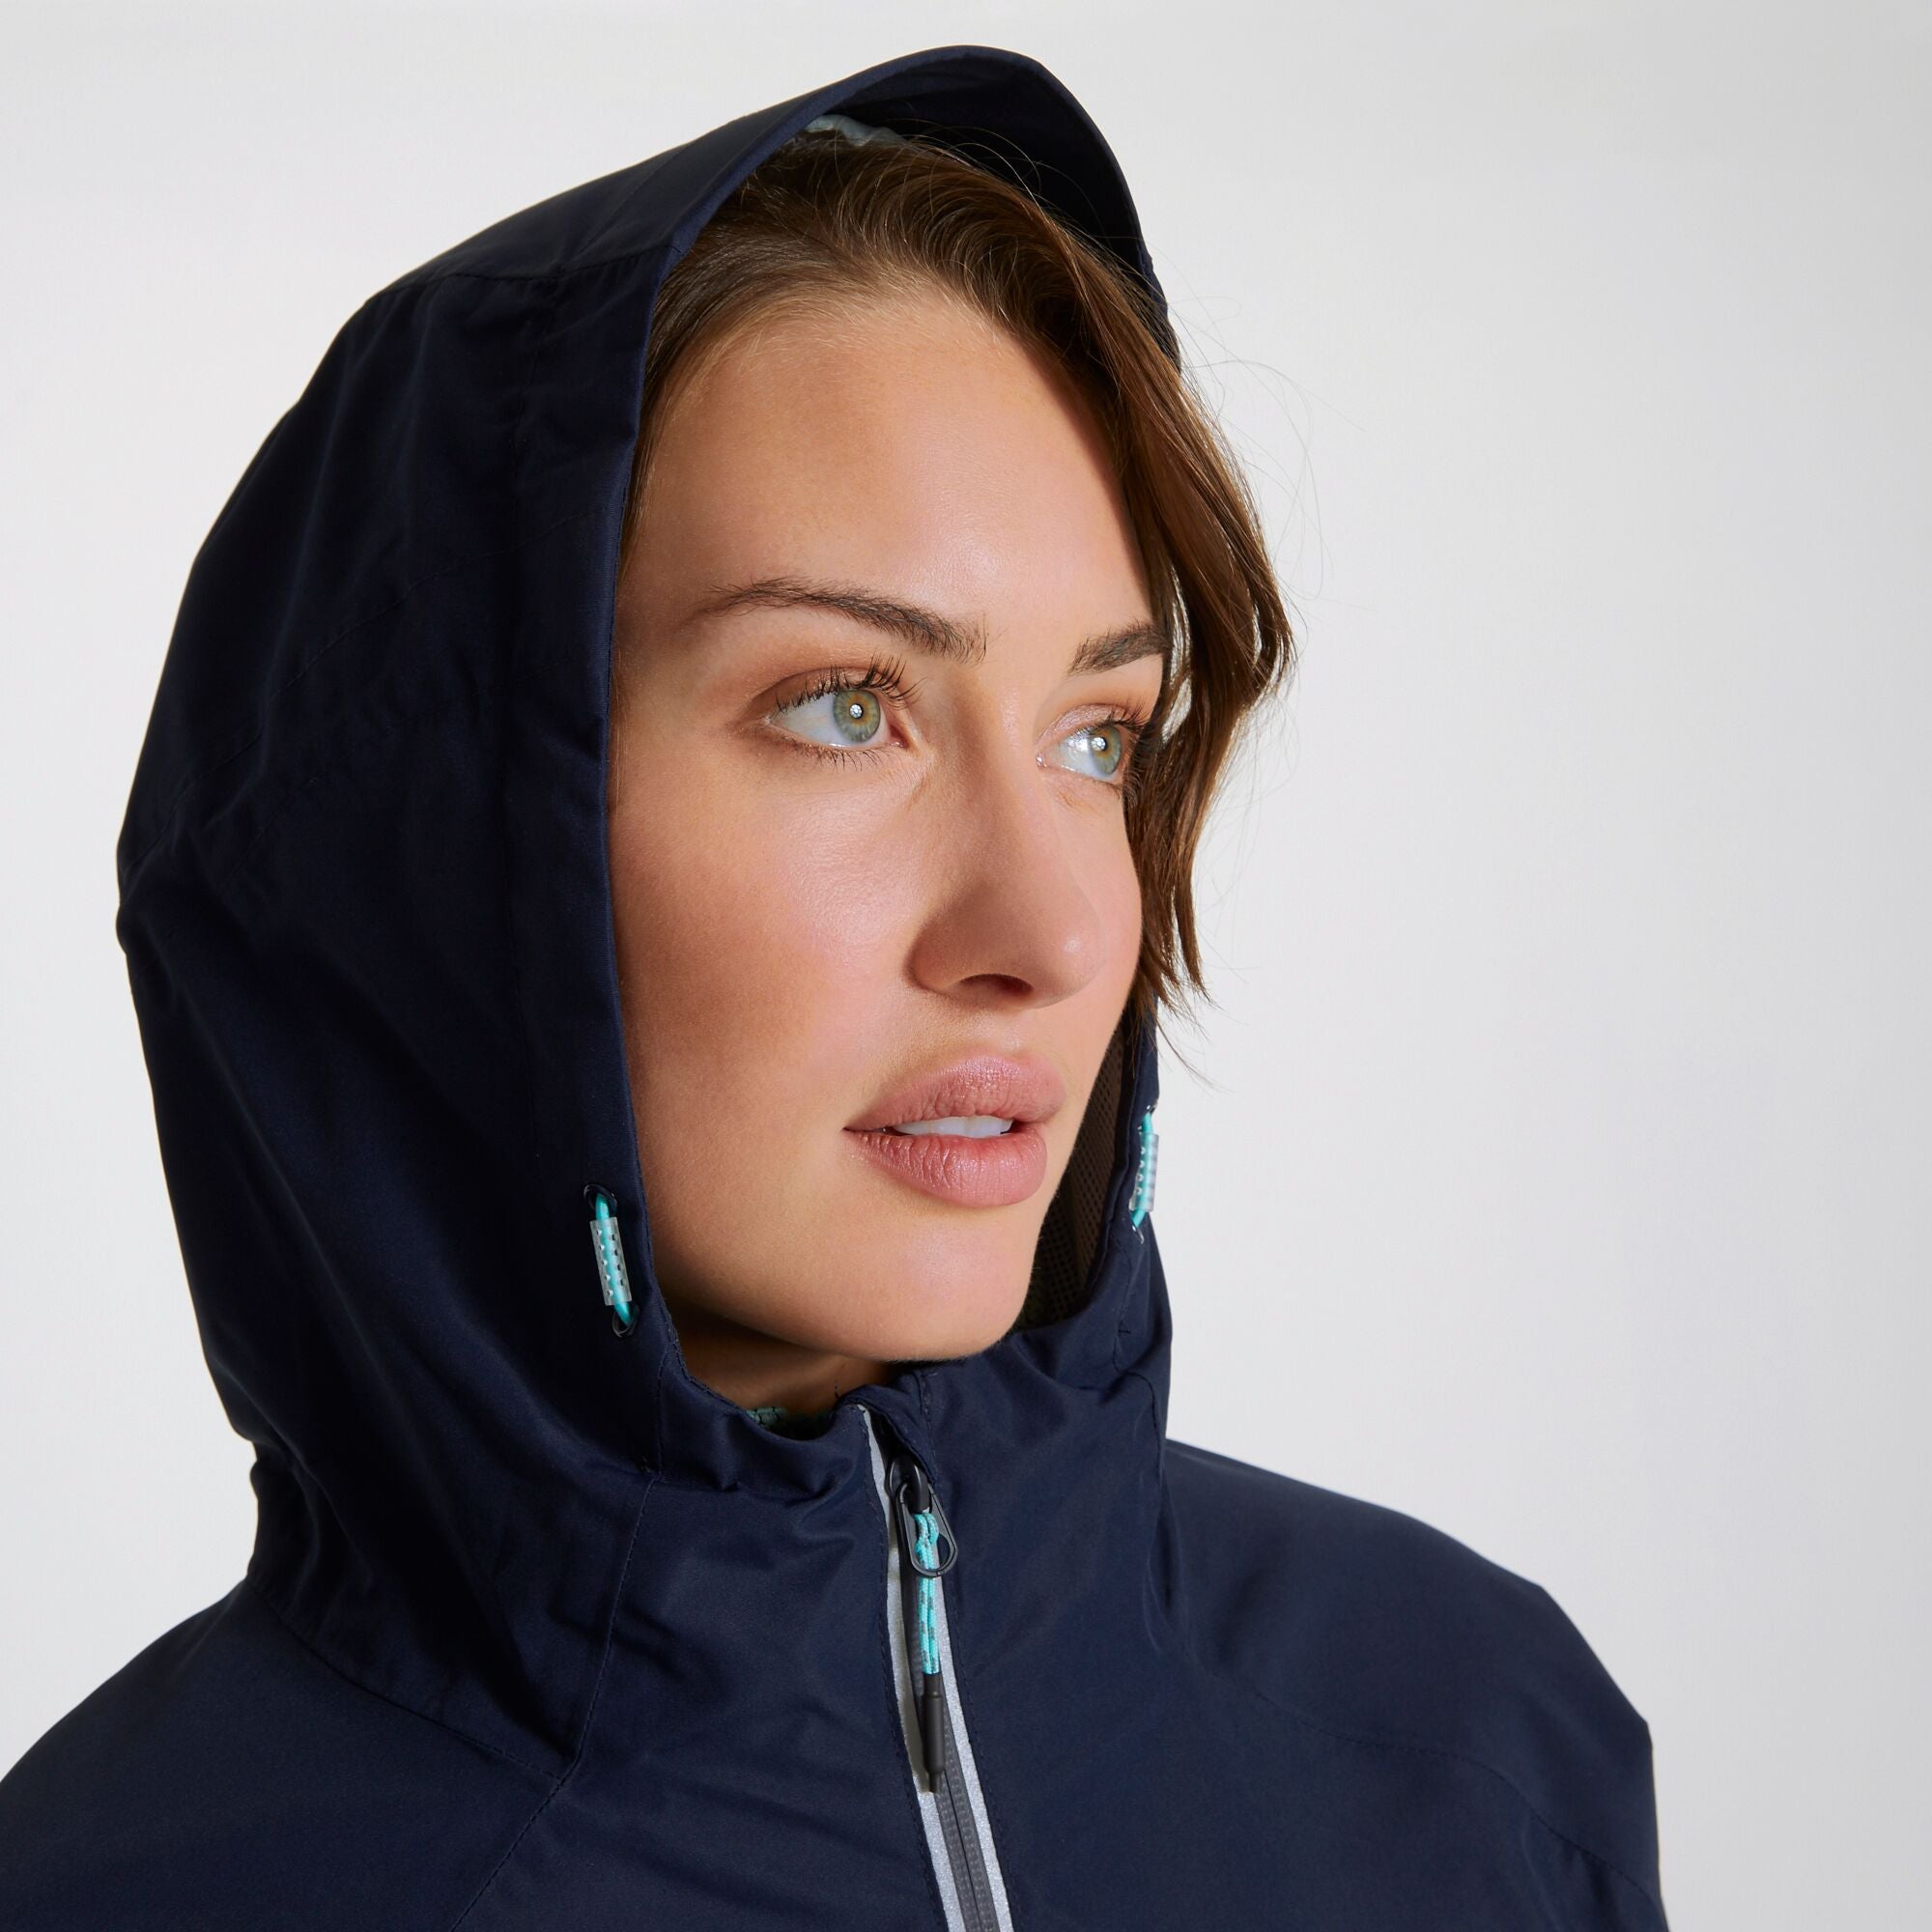 Women's Atlas Waterproof Jacket | Blue Navy